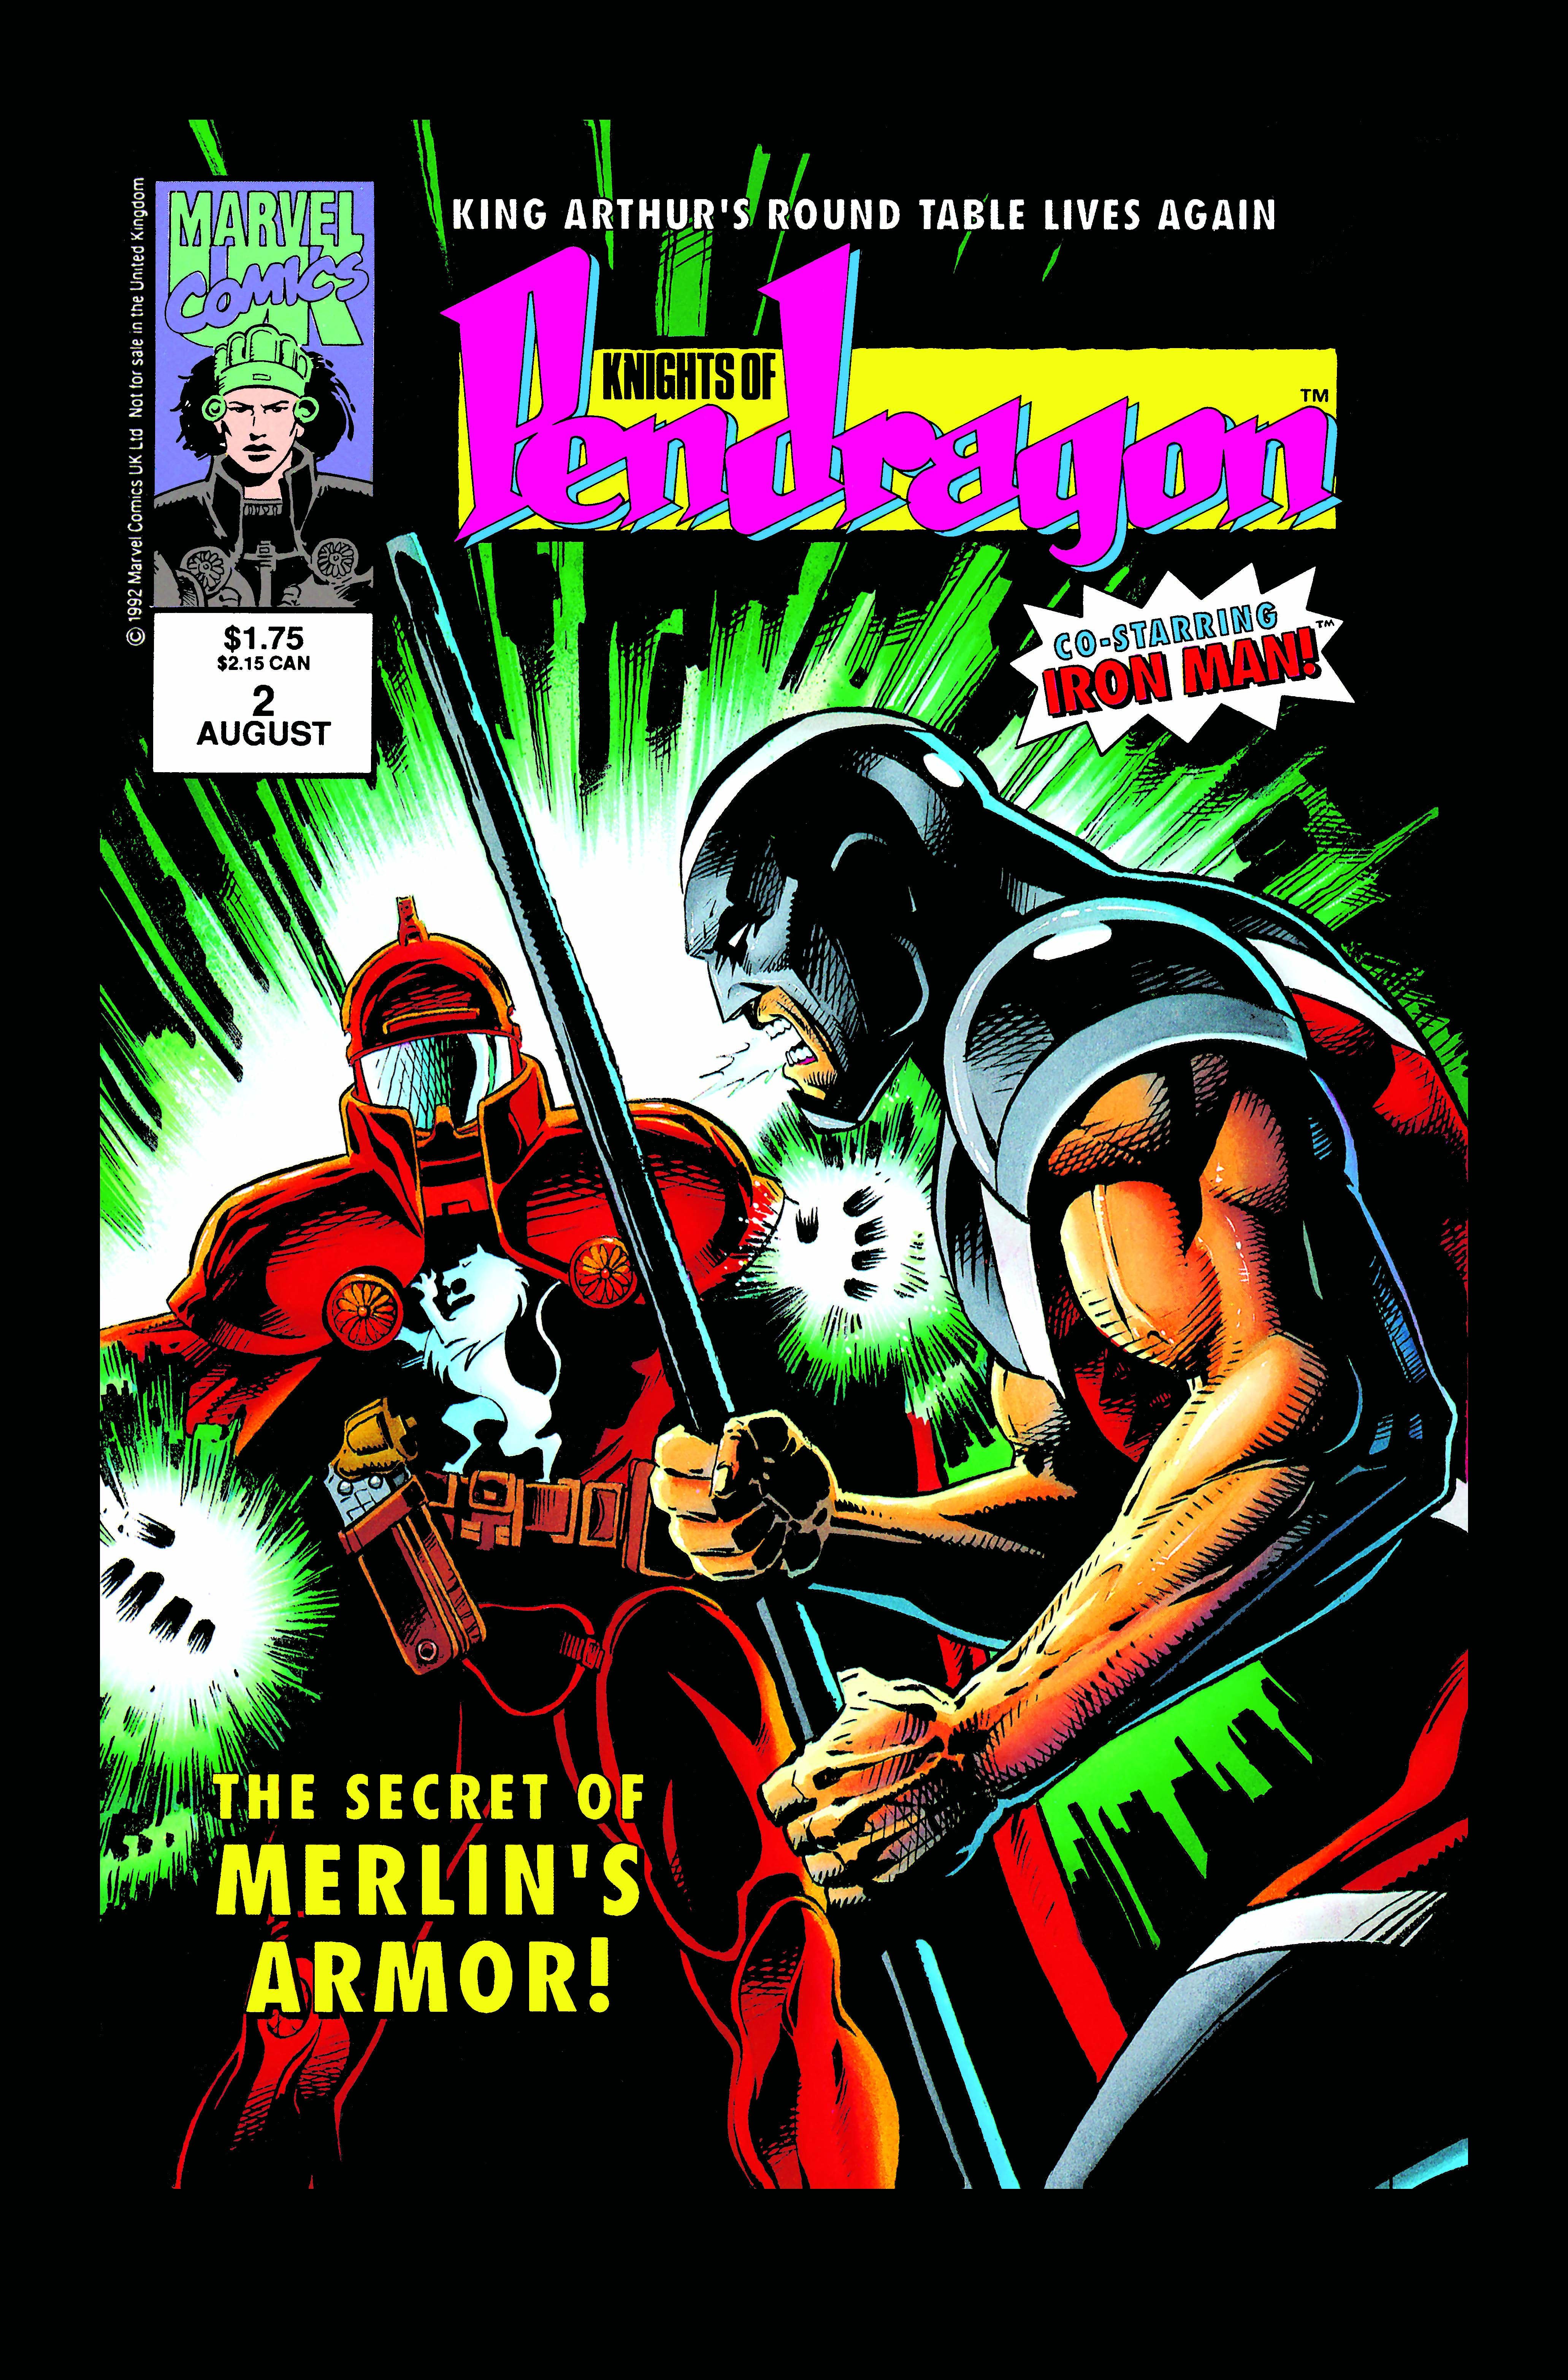 Pendragon (1992) #2